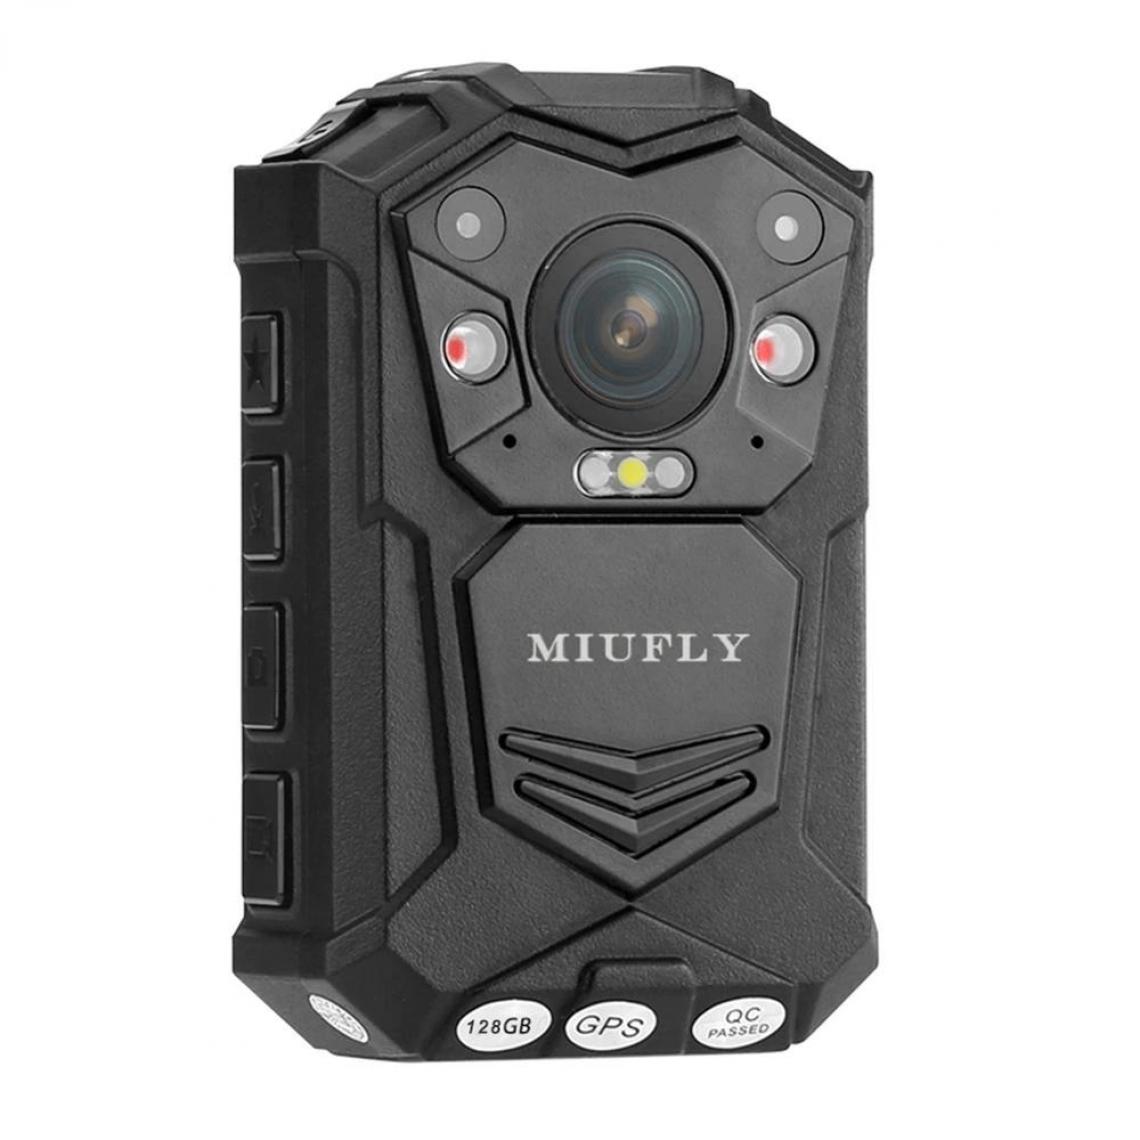 Universal - Caméra de police 1296P HD pour les forces de l'ordre, écran de 2 pouces, vision nocturne, mémoire interne de 128G et caméra GPS(Le noir) - Accessoires caméra